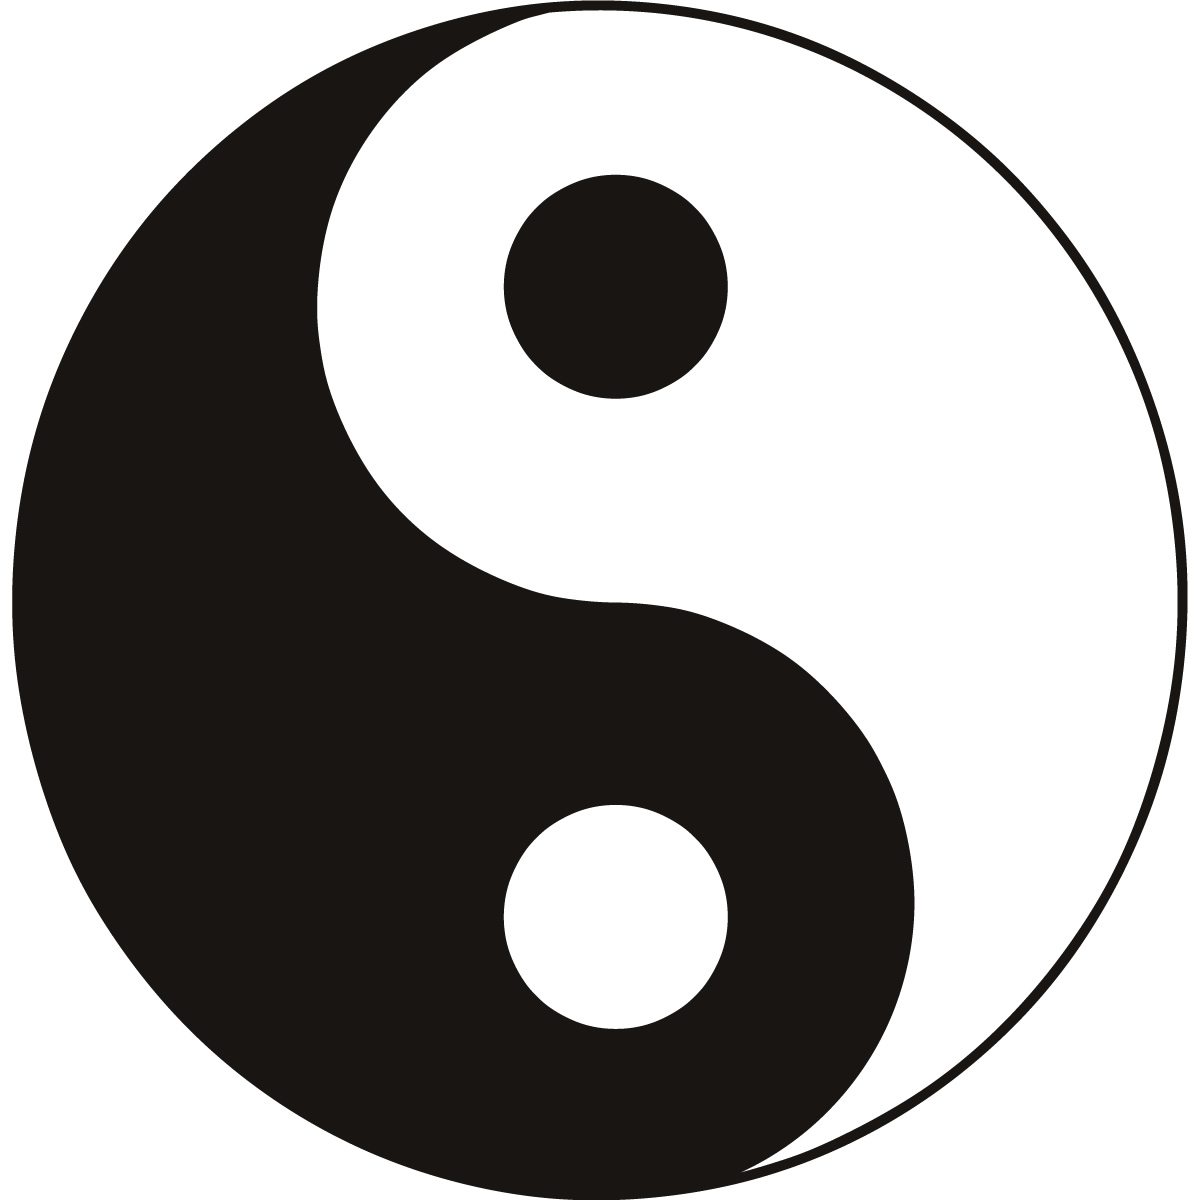 yin yang symbol